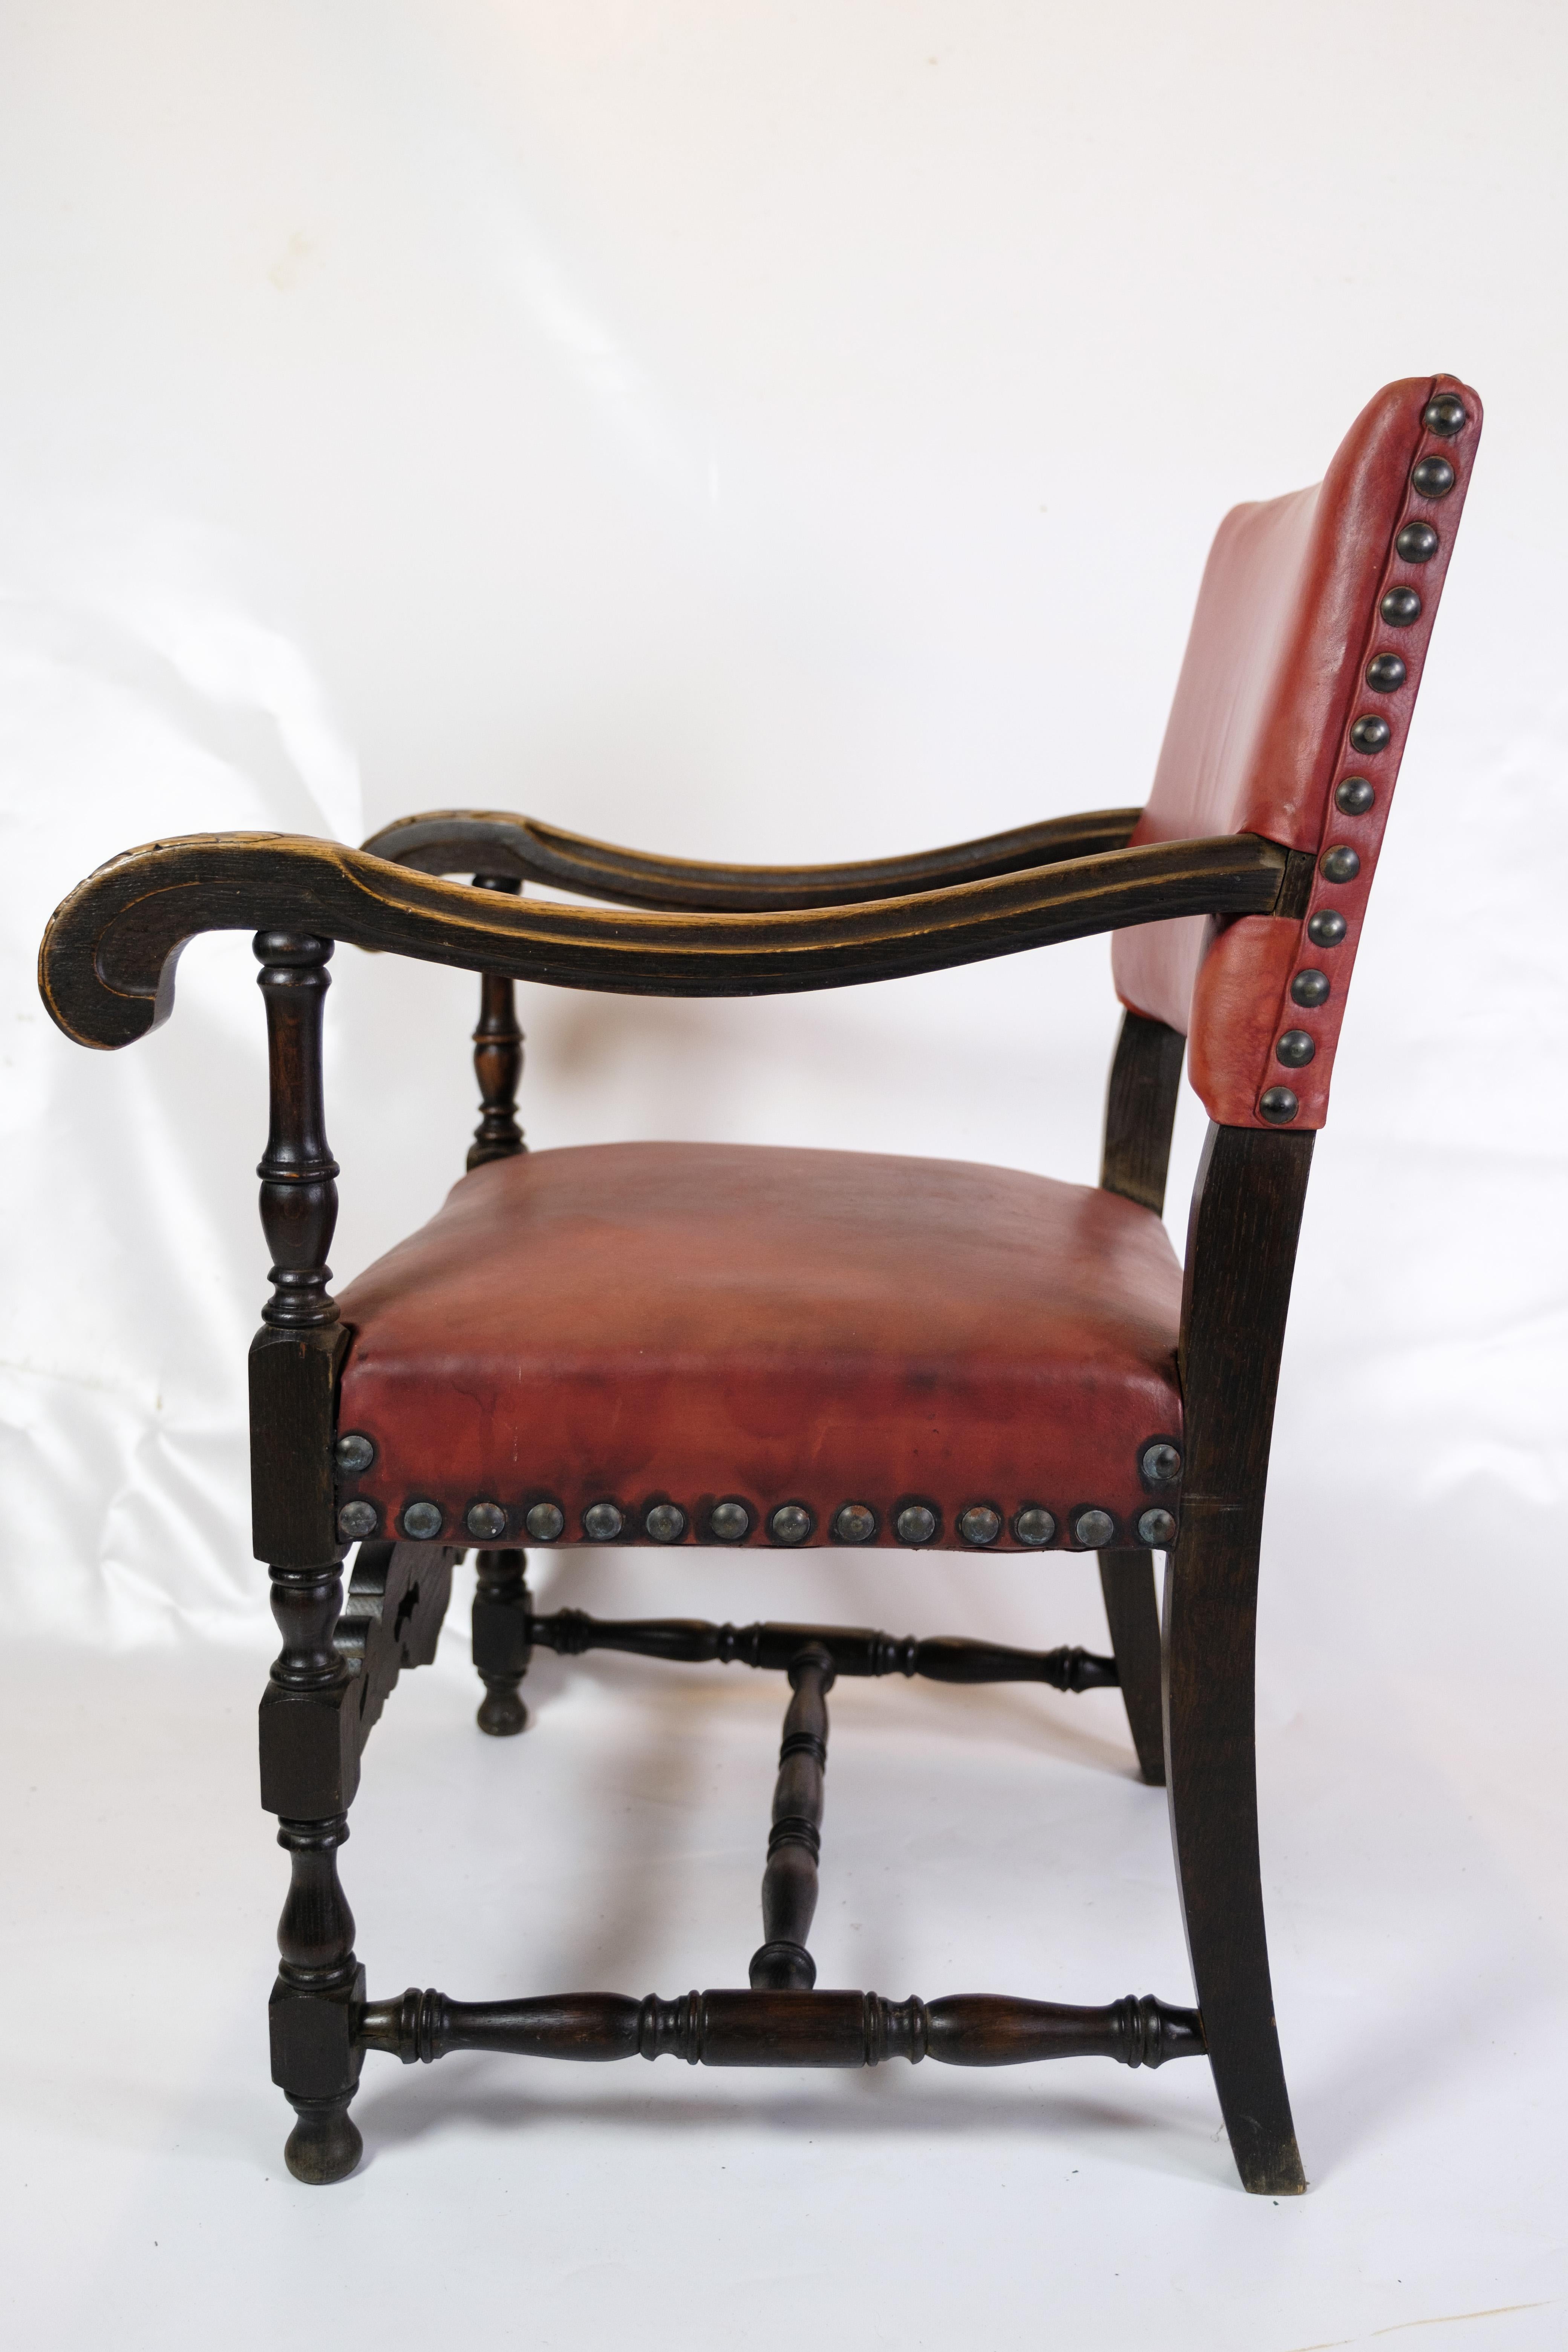 Cet ensemble de deux fauteuils anciens de 1930 est une merveilleuse combinaison d'artisanat authentique et d'élégance intemporelle. Avec leurs sièges en cuir rouge et leur structure en chêne, ces chaises dégagent un charme vintage unique et